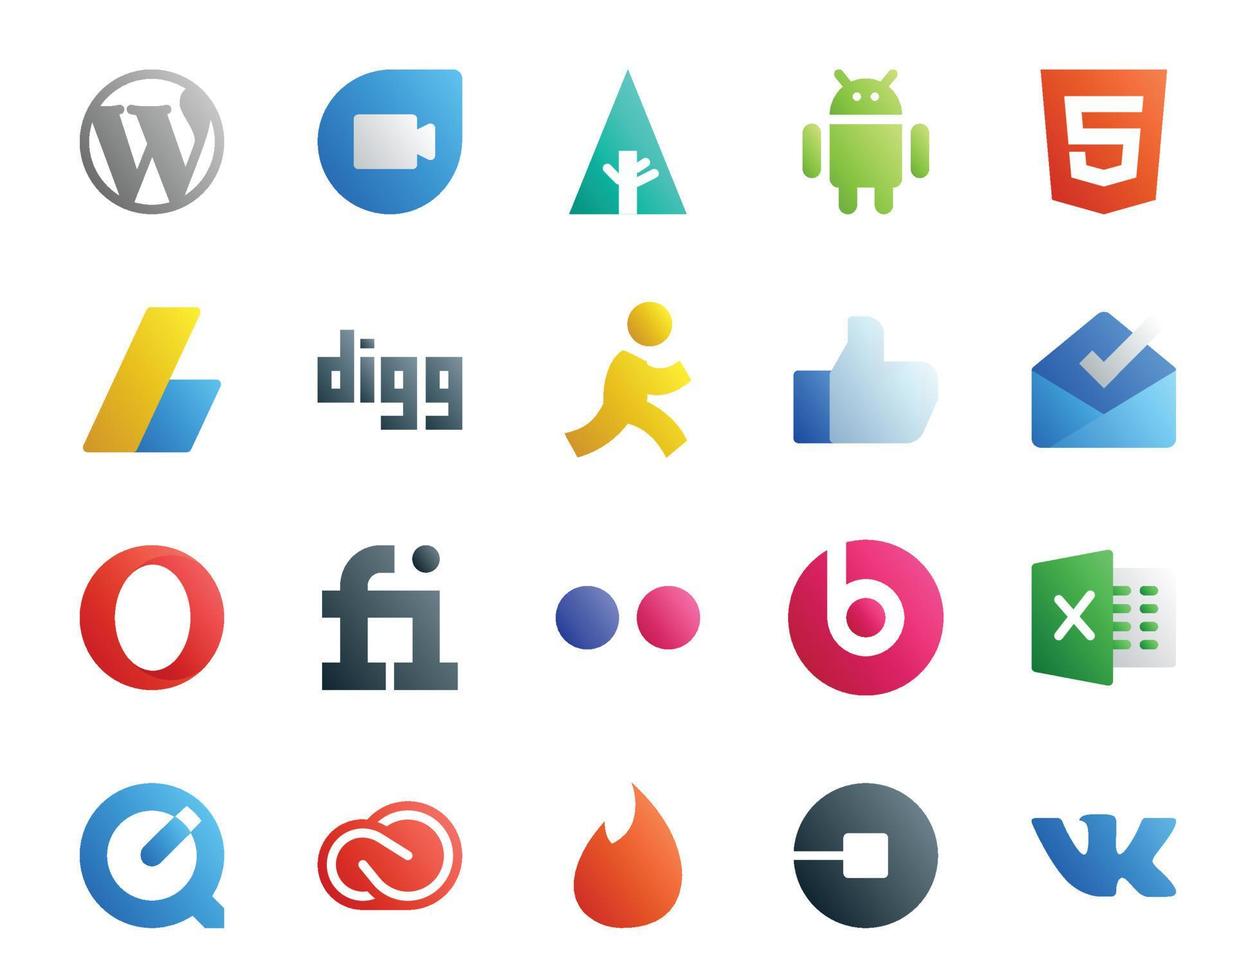 Paquete de 20 íconos de redes sociales que incluye quicktime beats pill digg flickr opera vector